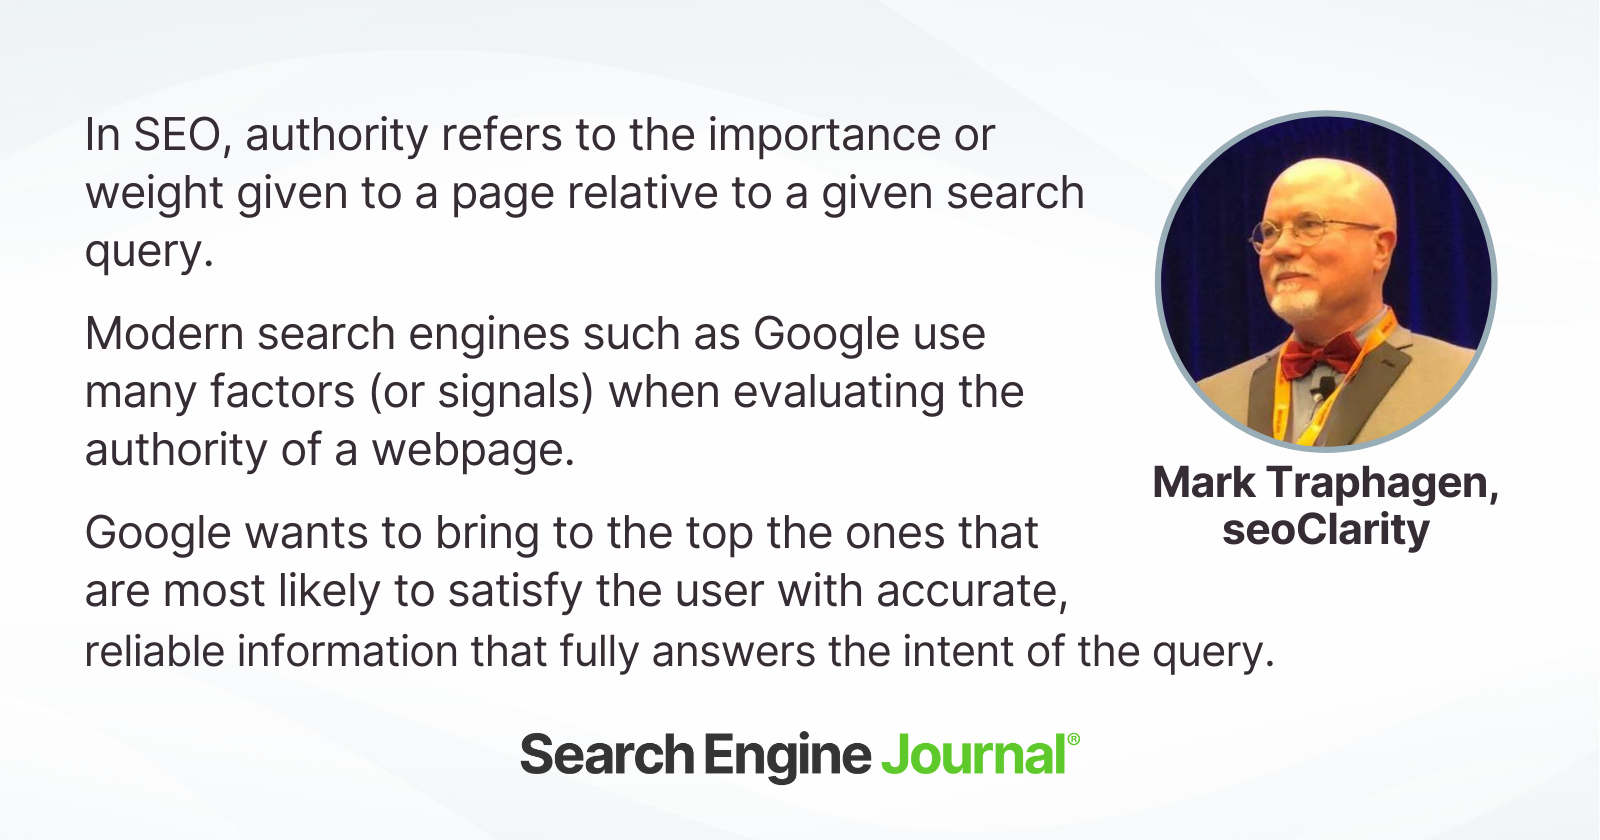 Mark Traphagen sobre cómo los motores de búsqueda evalúan la autoridad.